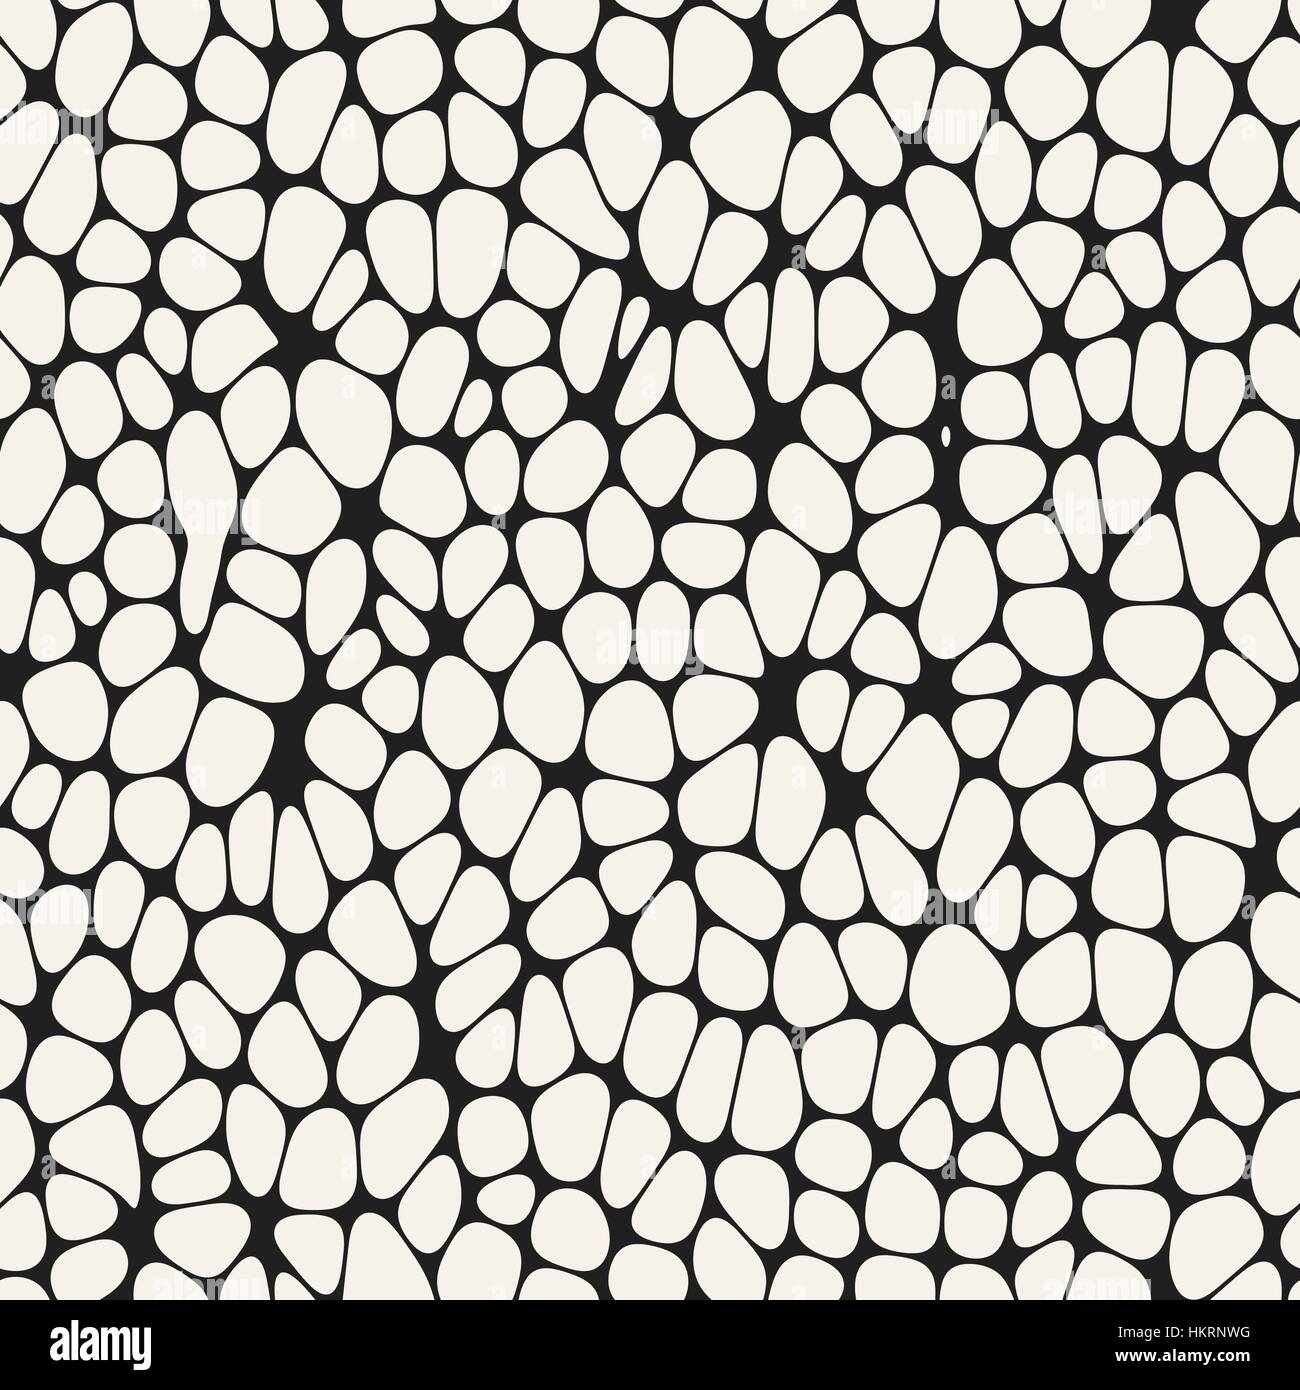 Des formes arrondies irrégulières organique fatras. Seamless Vector motif en noir et blanc Illustration de Vecteur